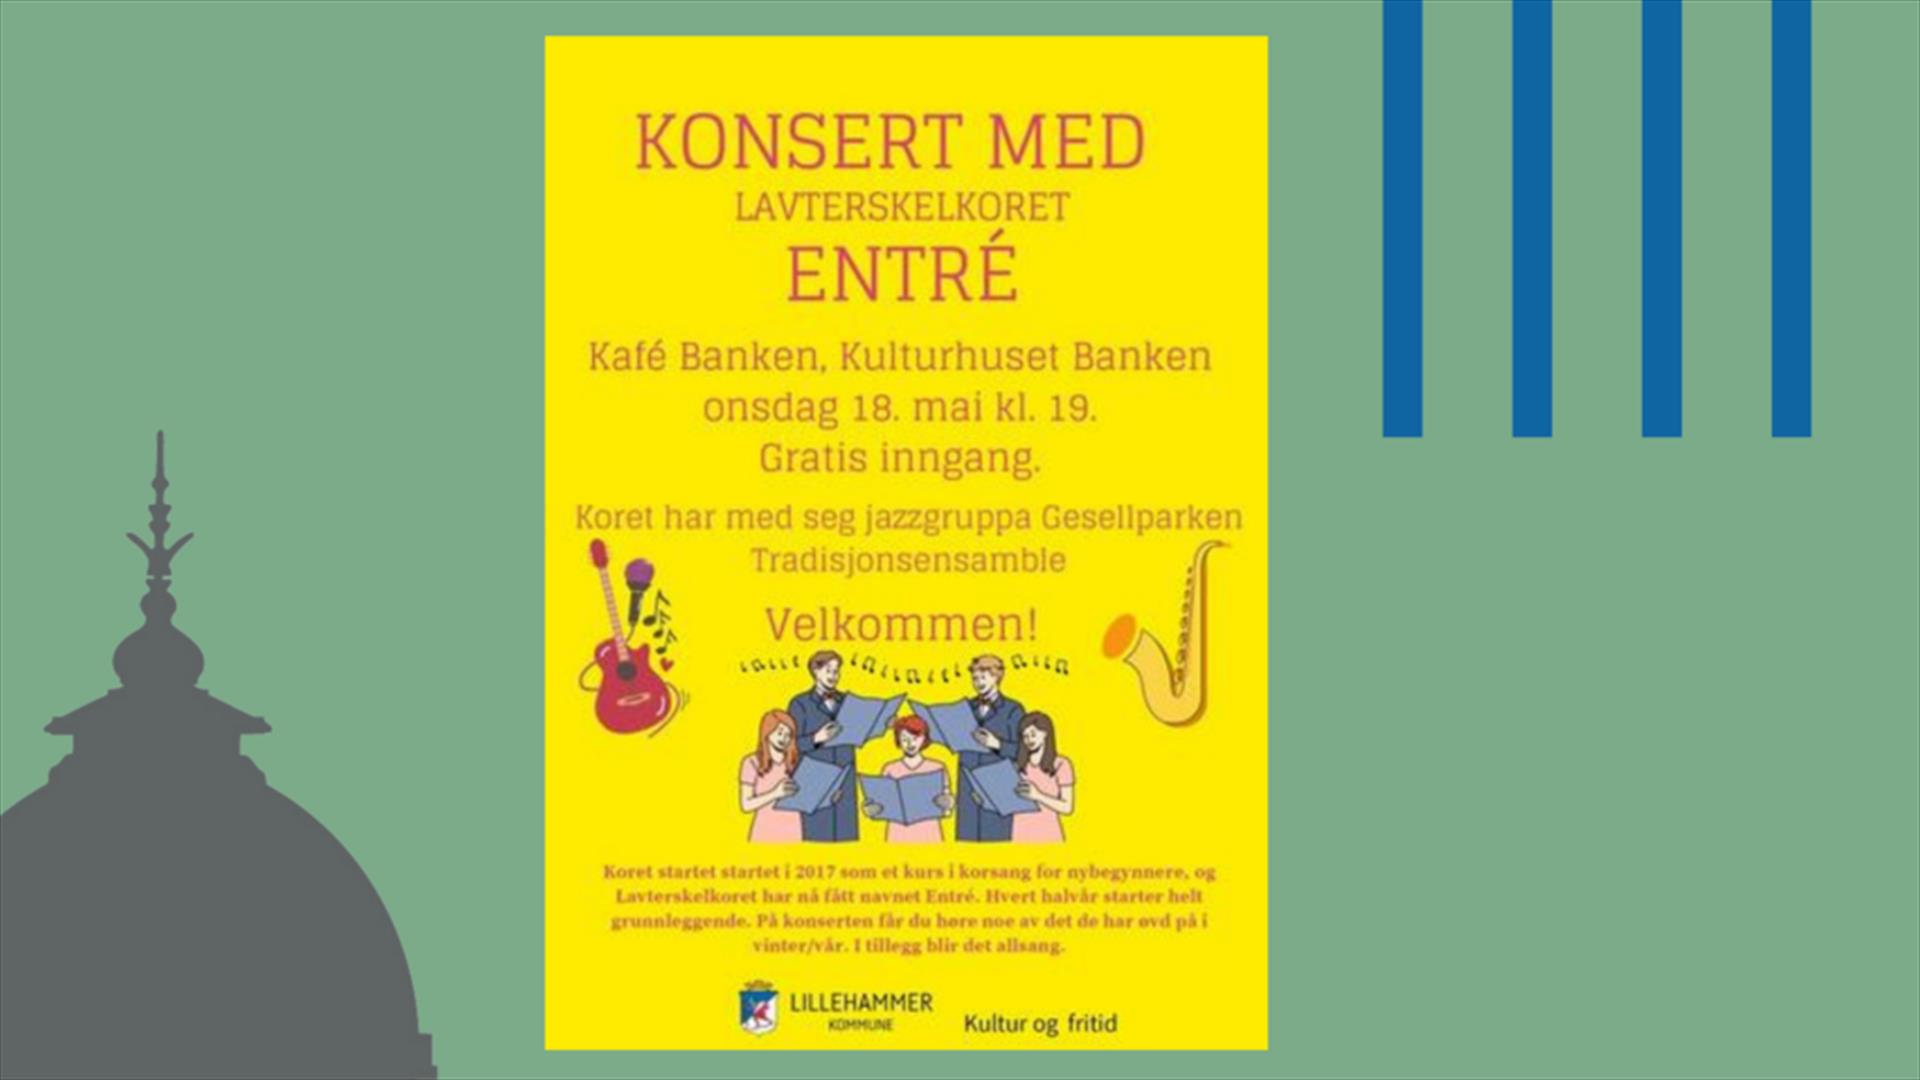 Plakat som viser konsert med koret Entre